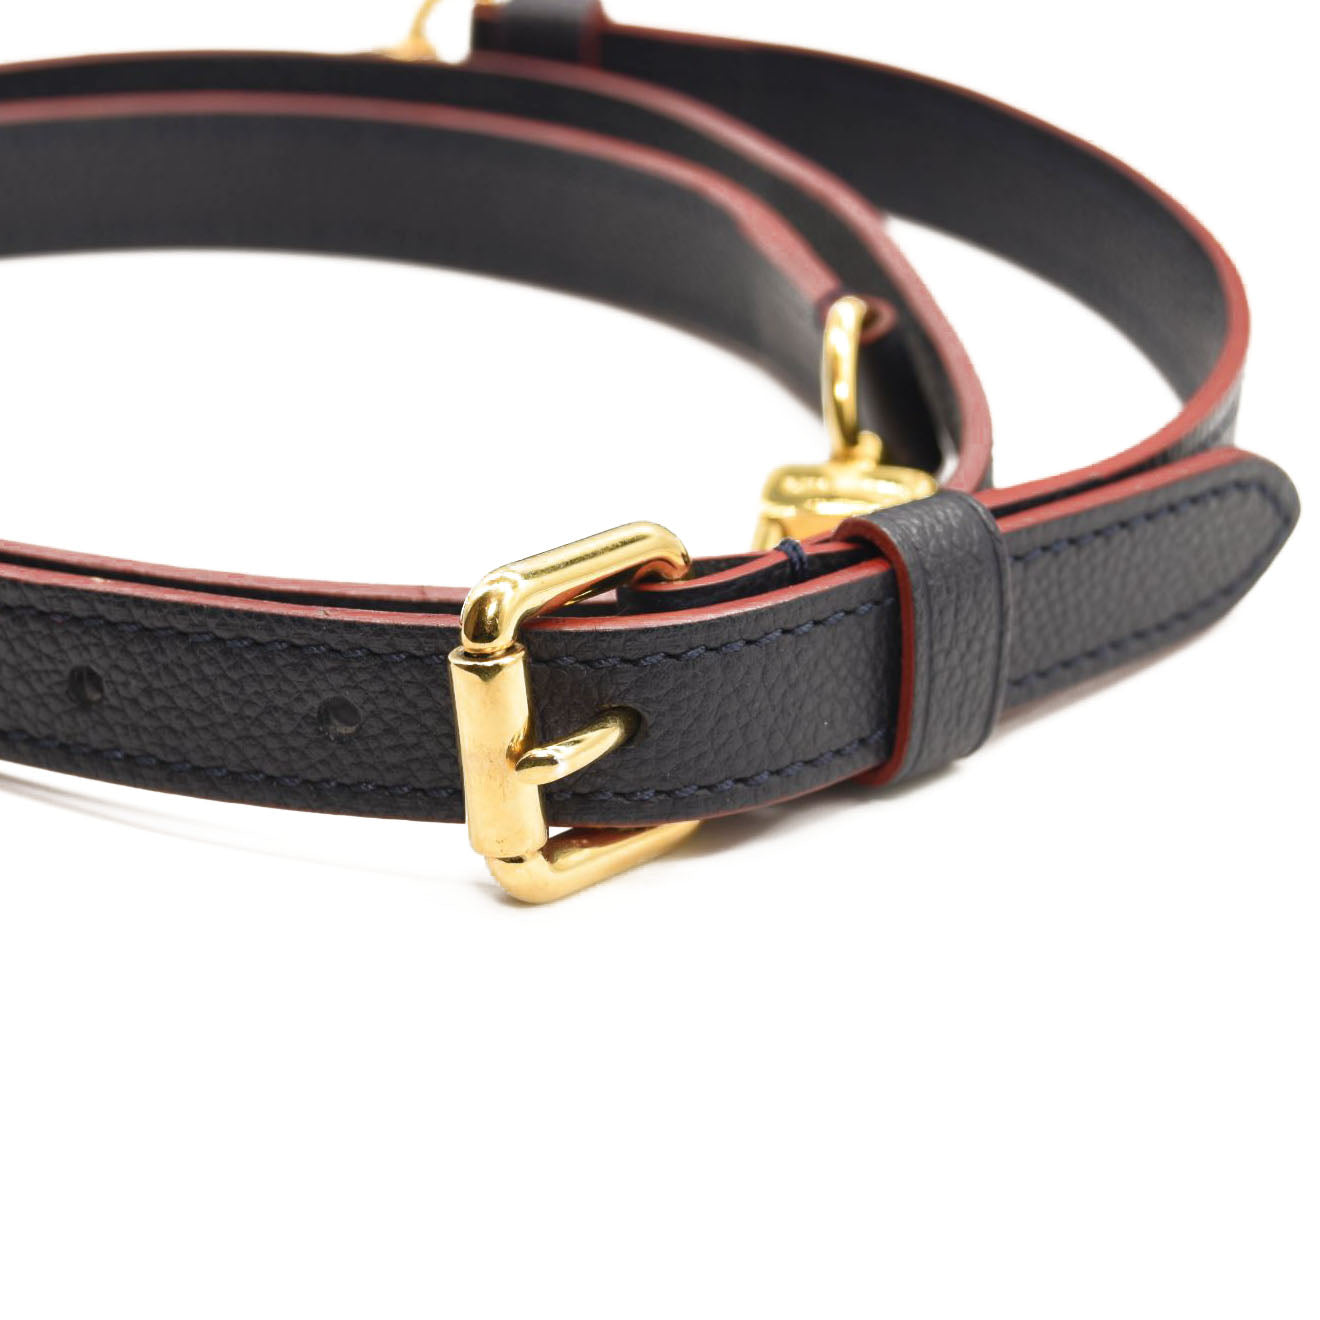 White - Luxury Designer Monogram Empreinte Leather Dog Collar